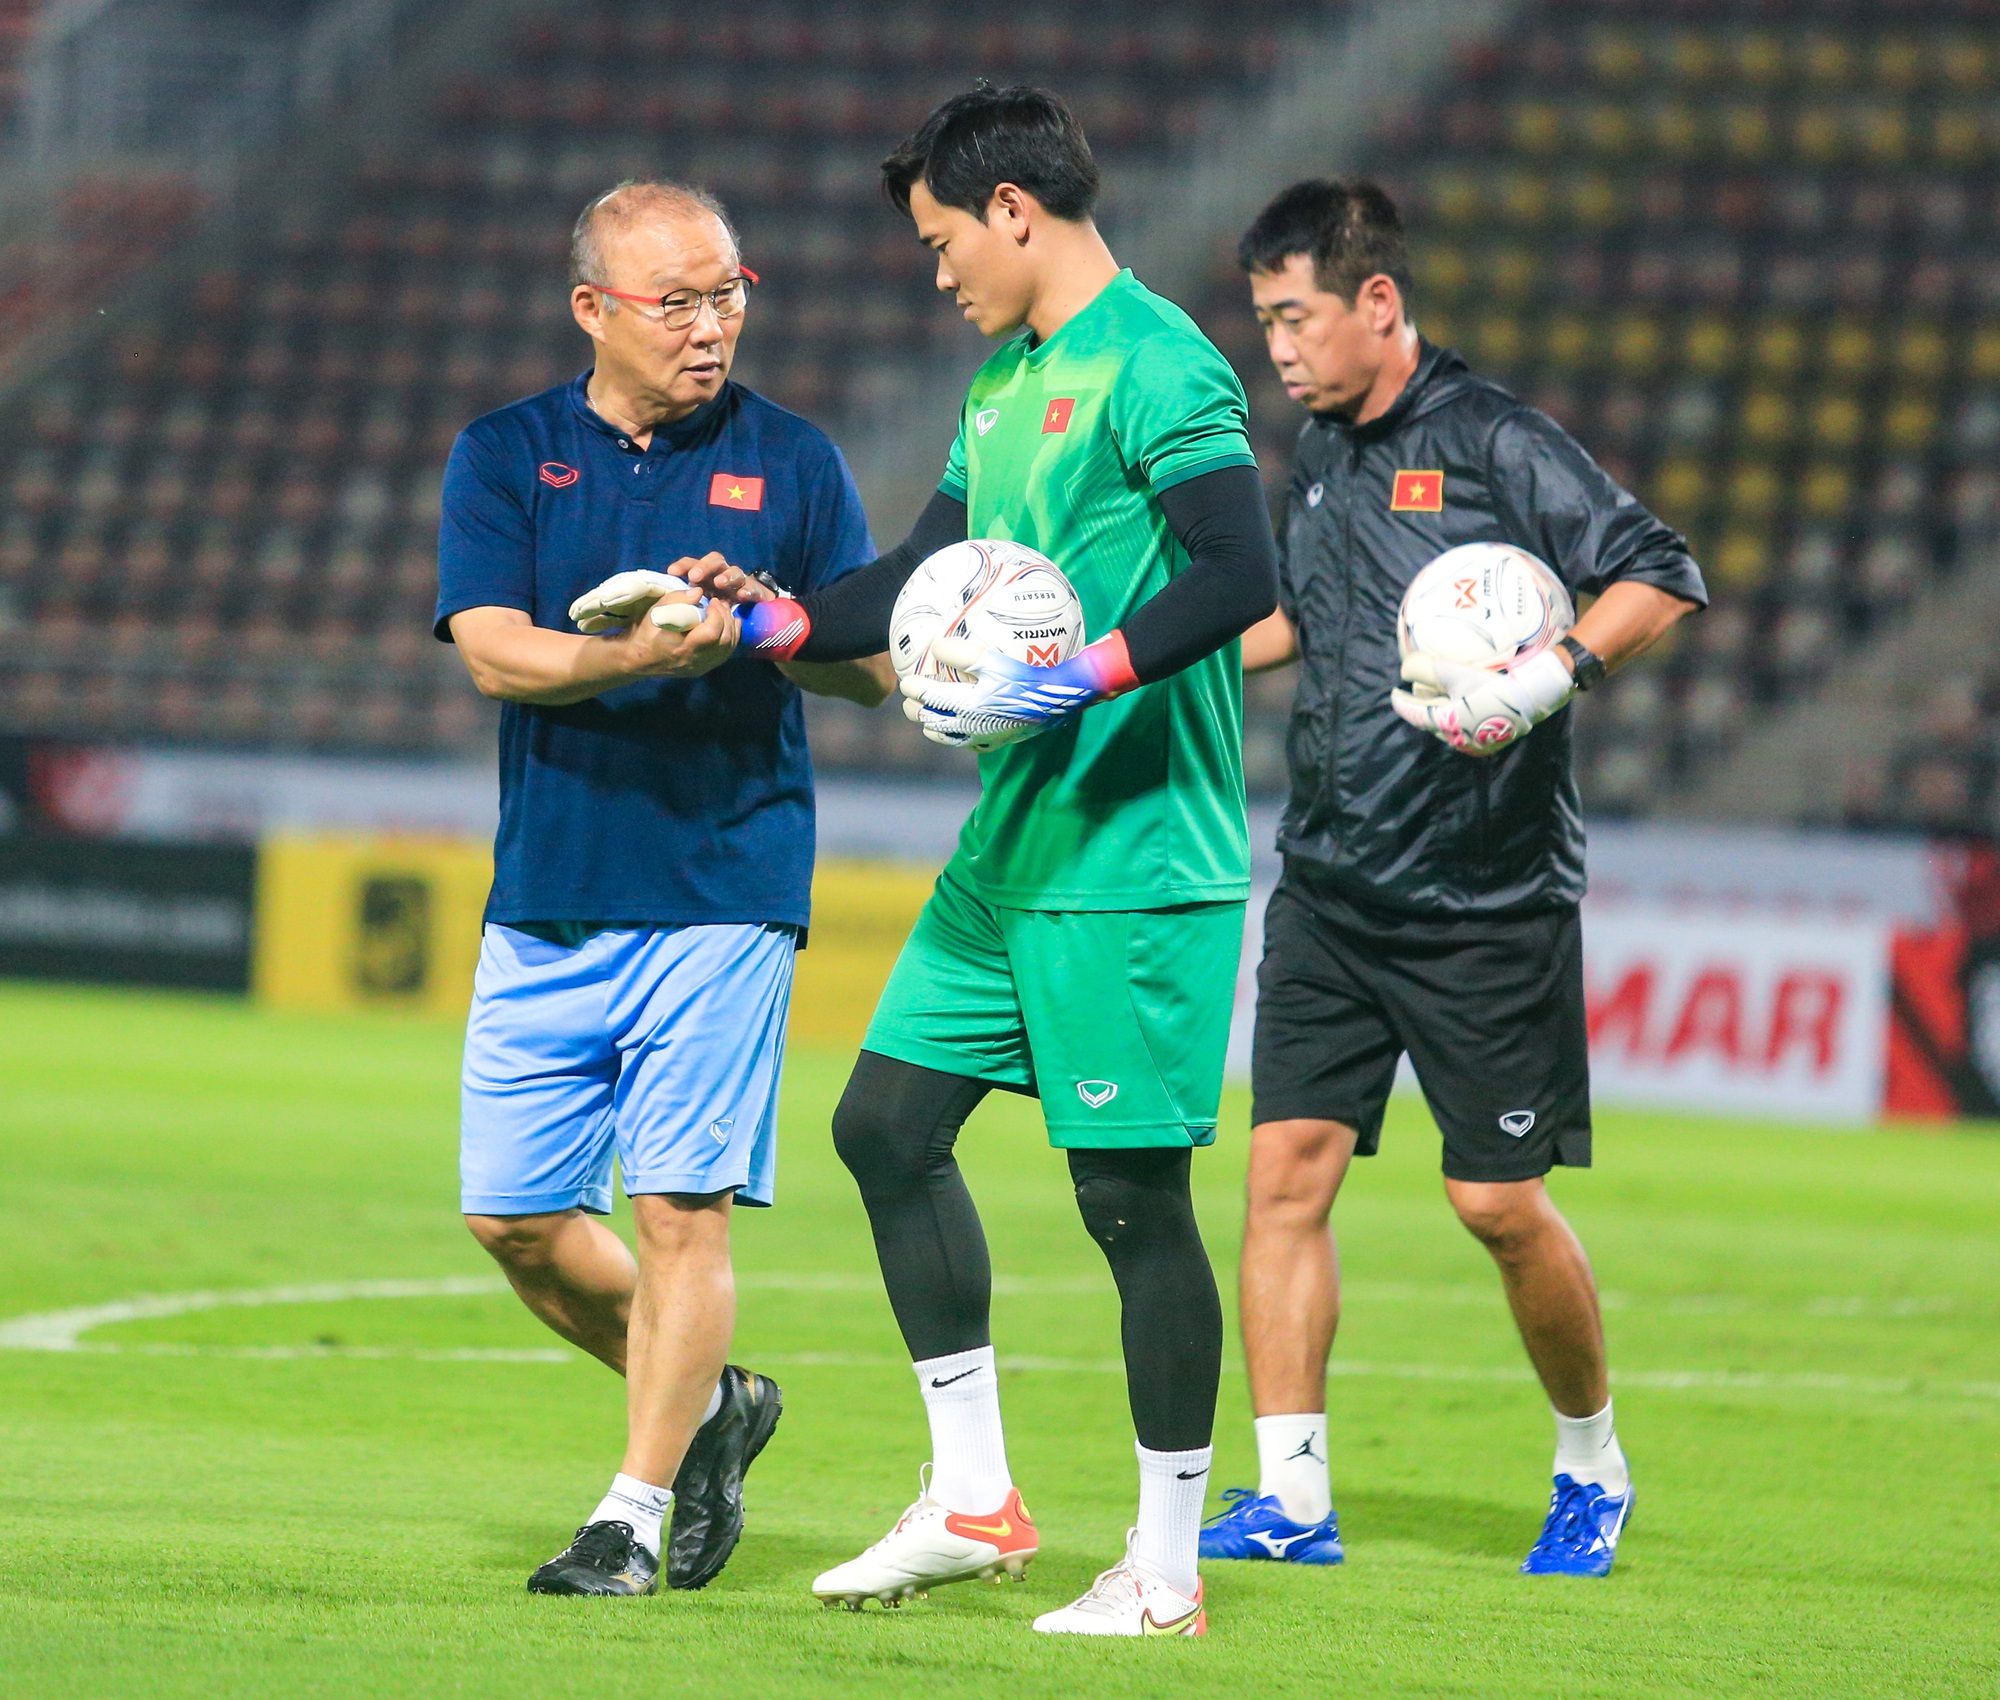 Đội tuyển Việt Nam hô vang: Quyết tâm vô địch, HLV Park Hang-seo động viên các thủ môn - Ảnh 3.